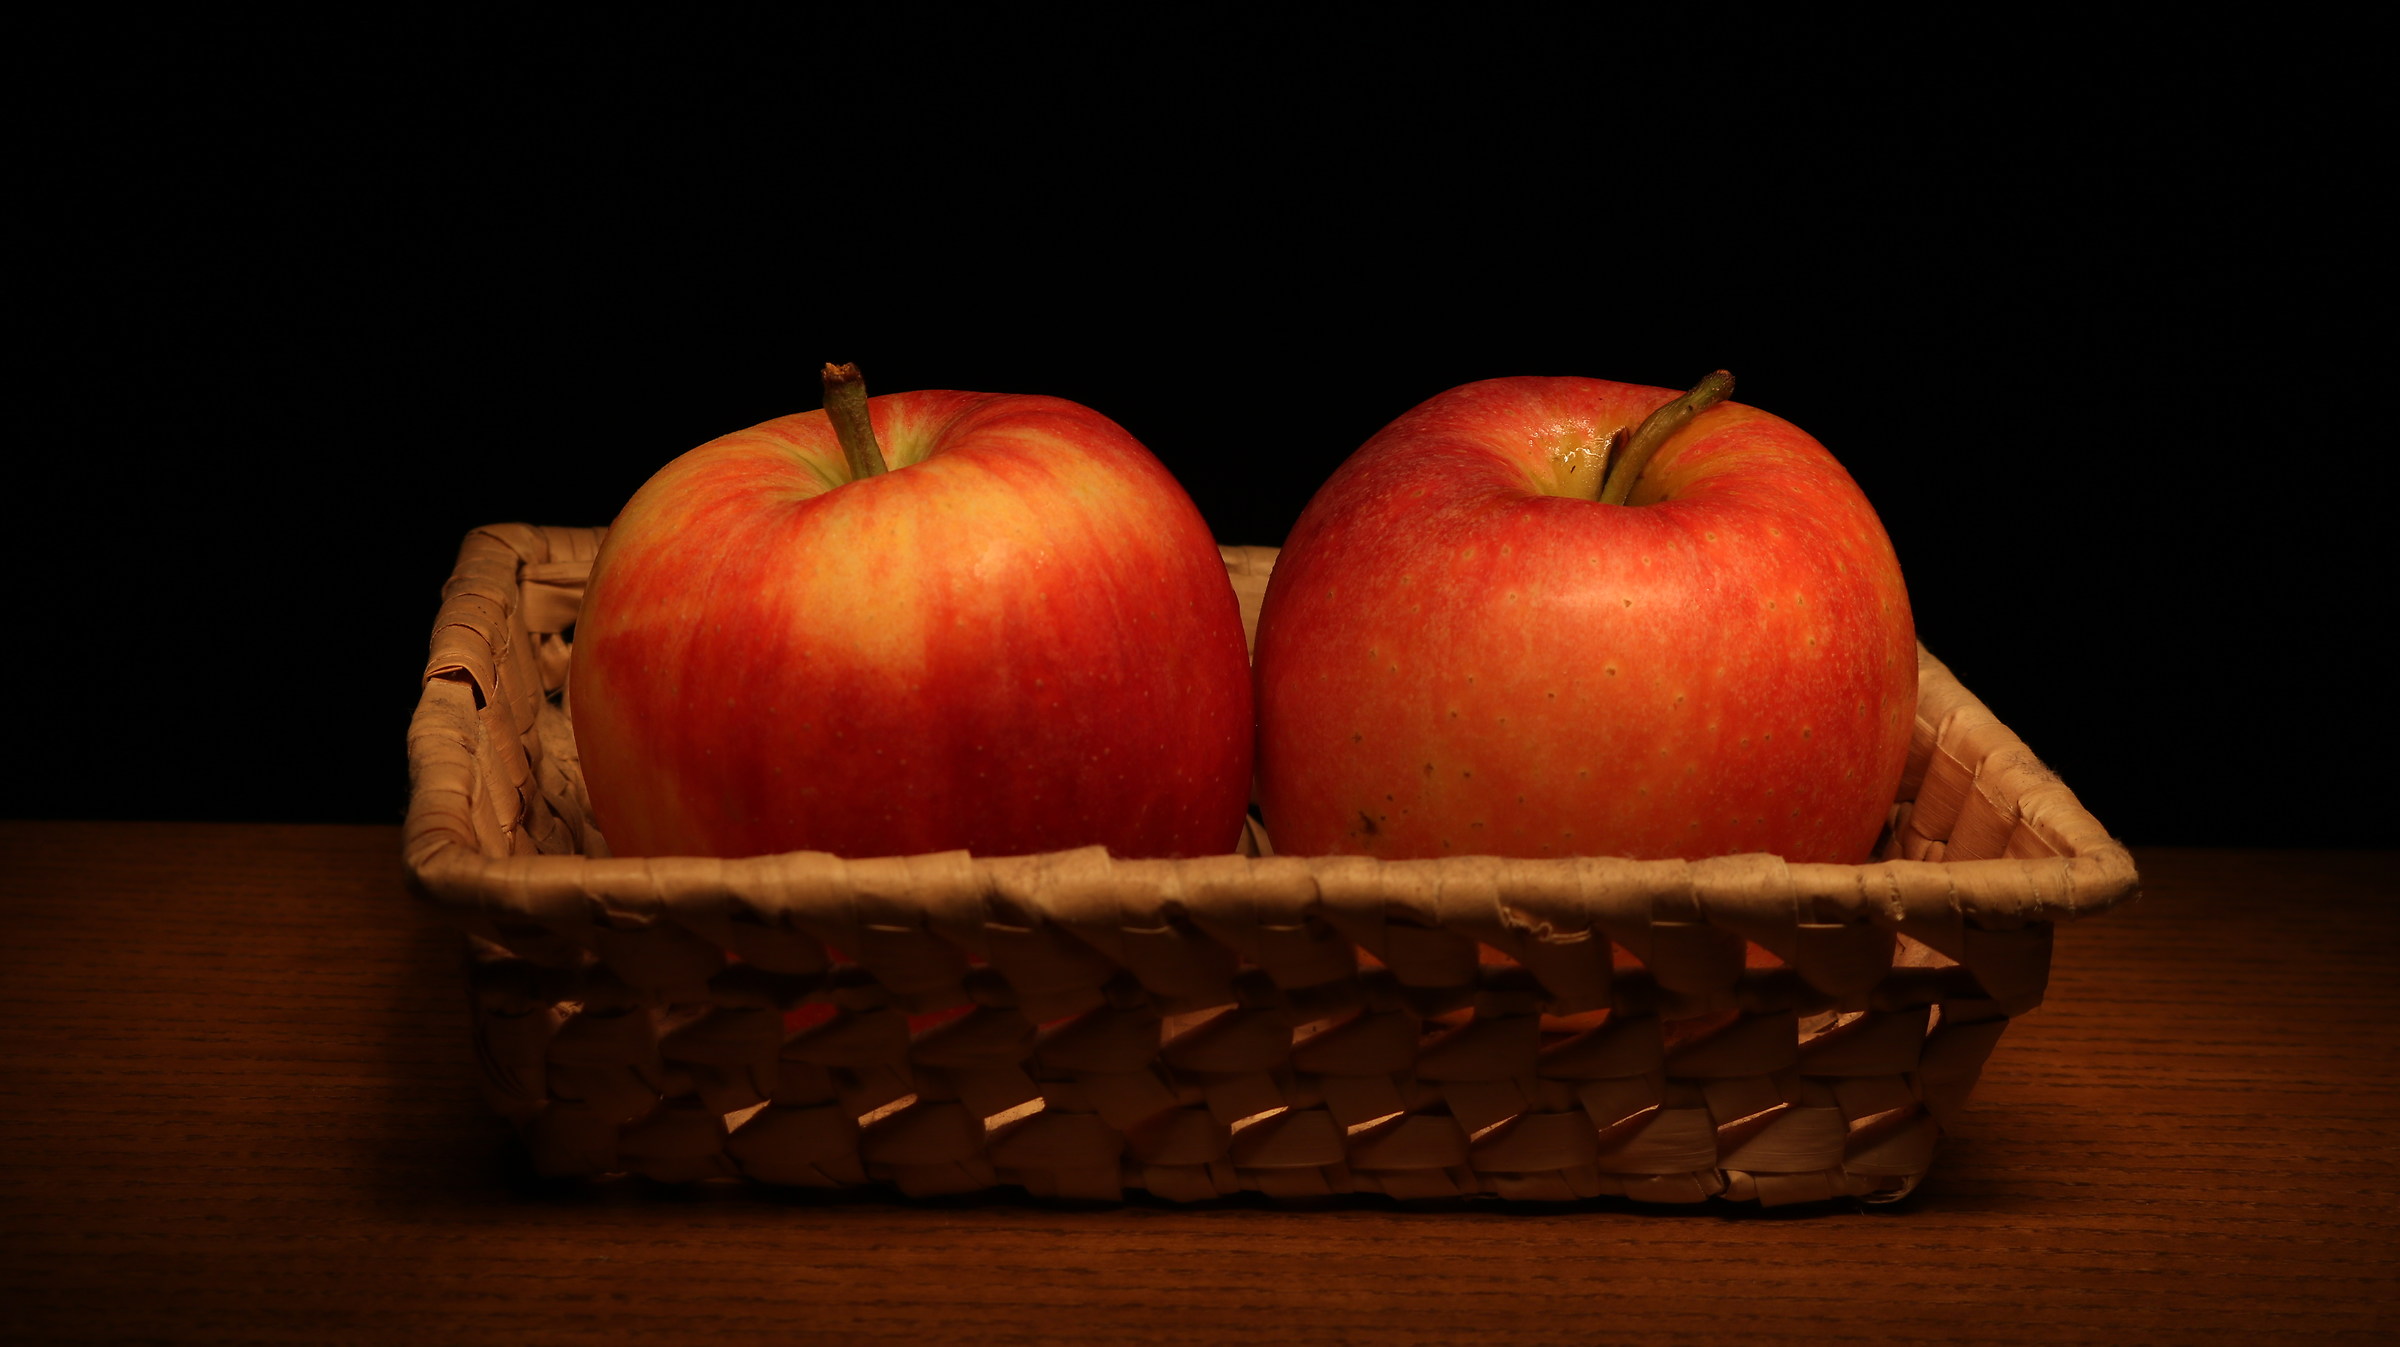 Pair of apples...